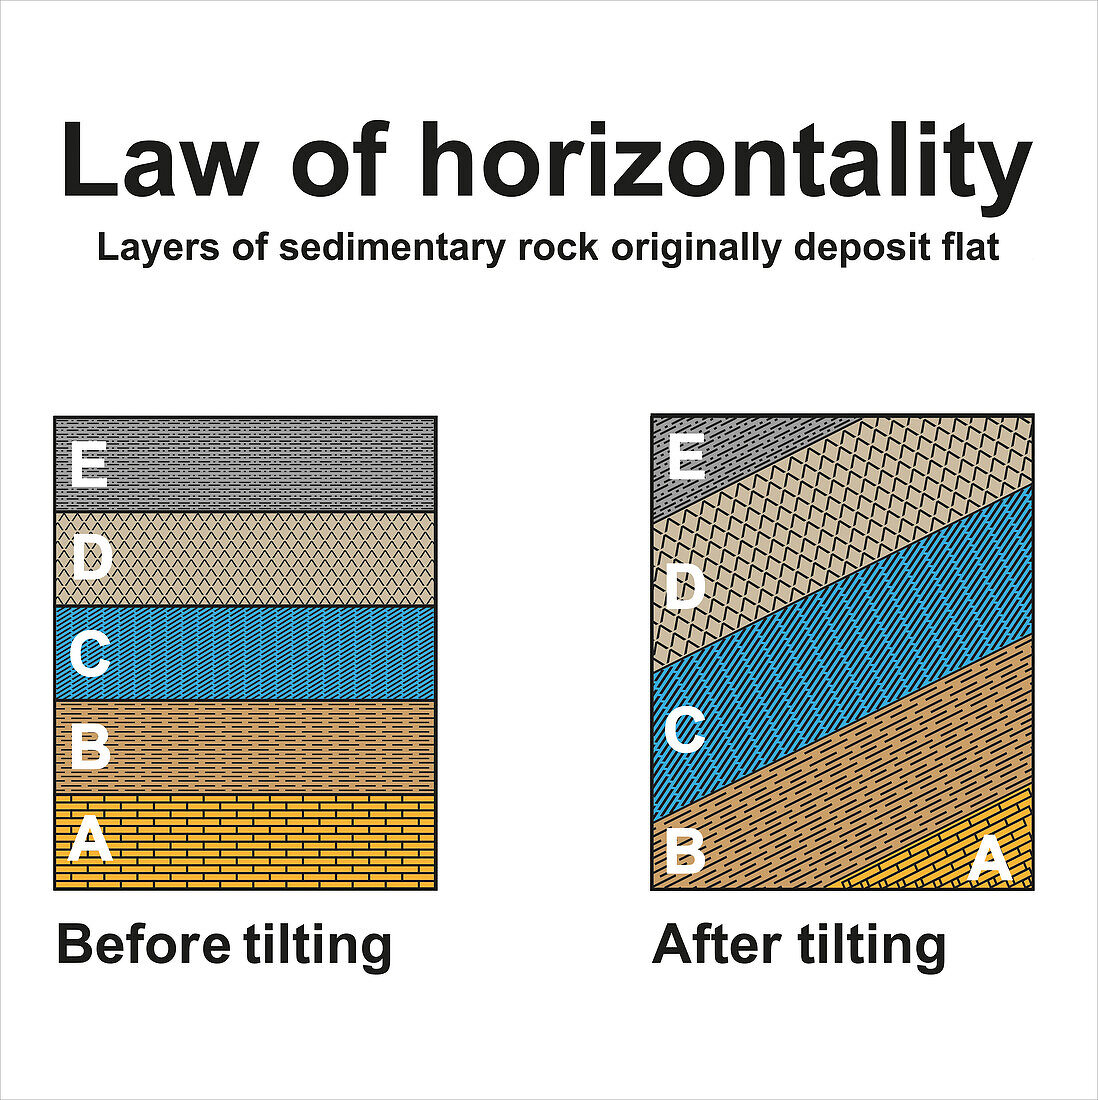 Law of horizontality, illustration